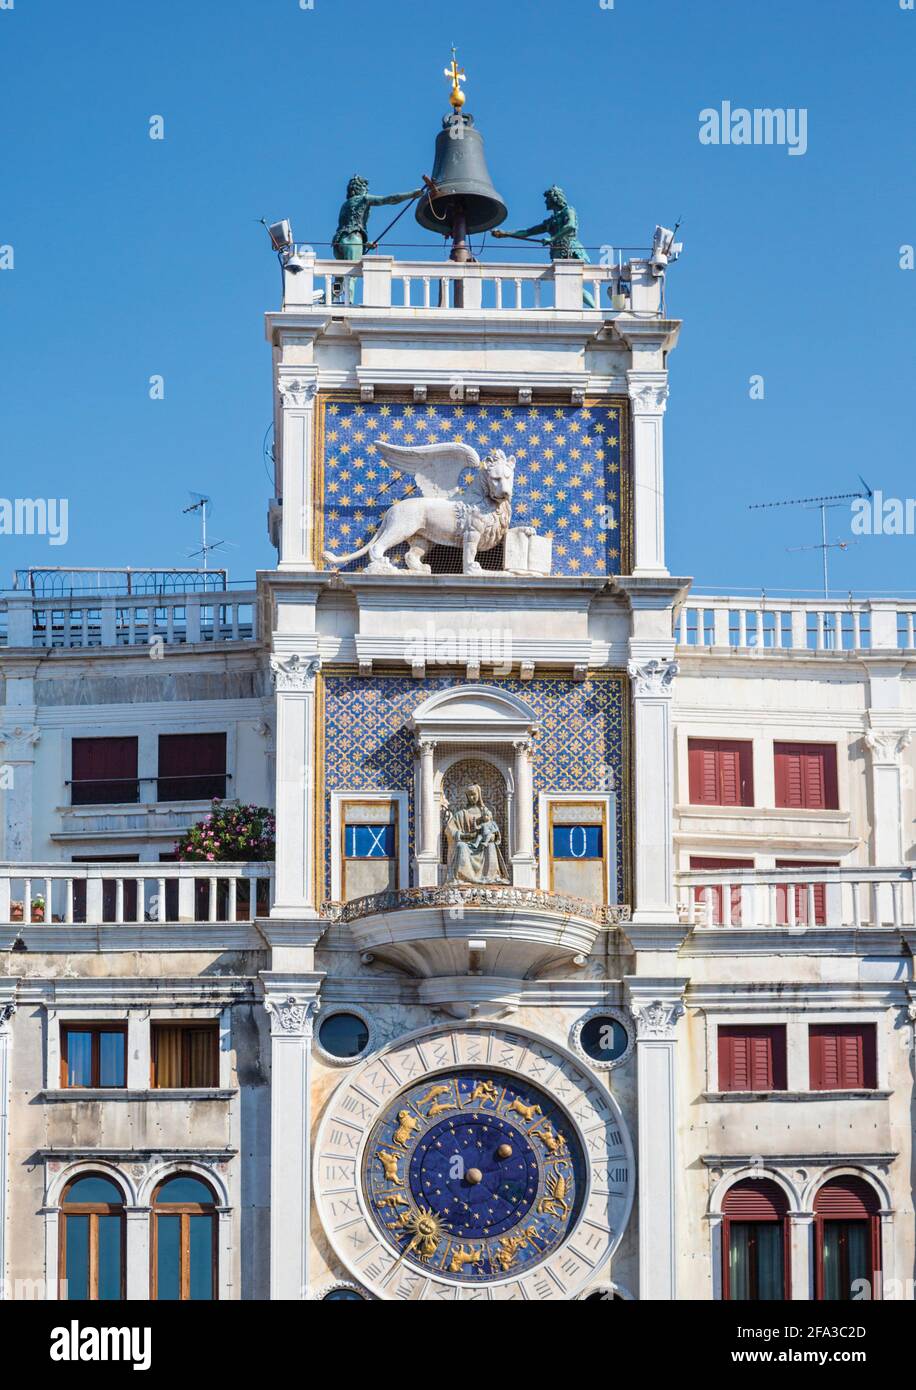 Venise, province de Venise, Vénétie, Italie. Torre dell'Orologio, ou la Tour de l'horloge, sur la Piazza San Marco. La tour date des années 1490. Venise et moi Banque D'Images